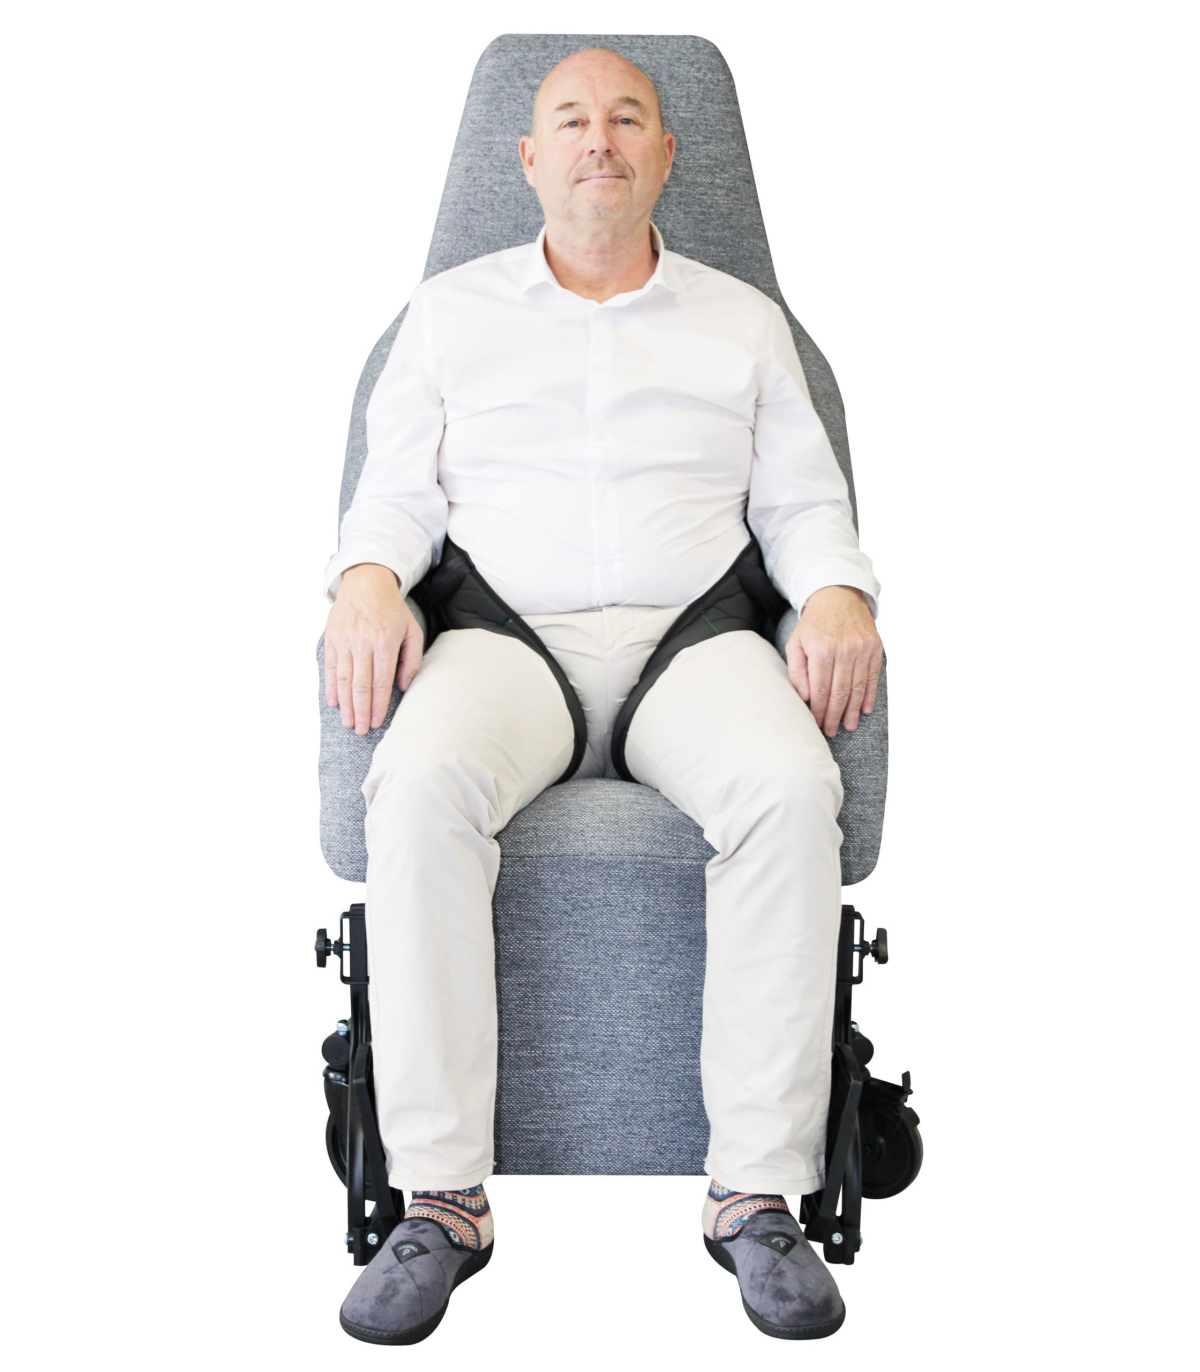 Ceinture abdominale de maintien pour fauteuil roulant